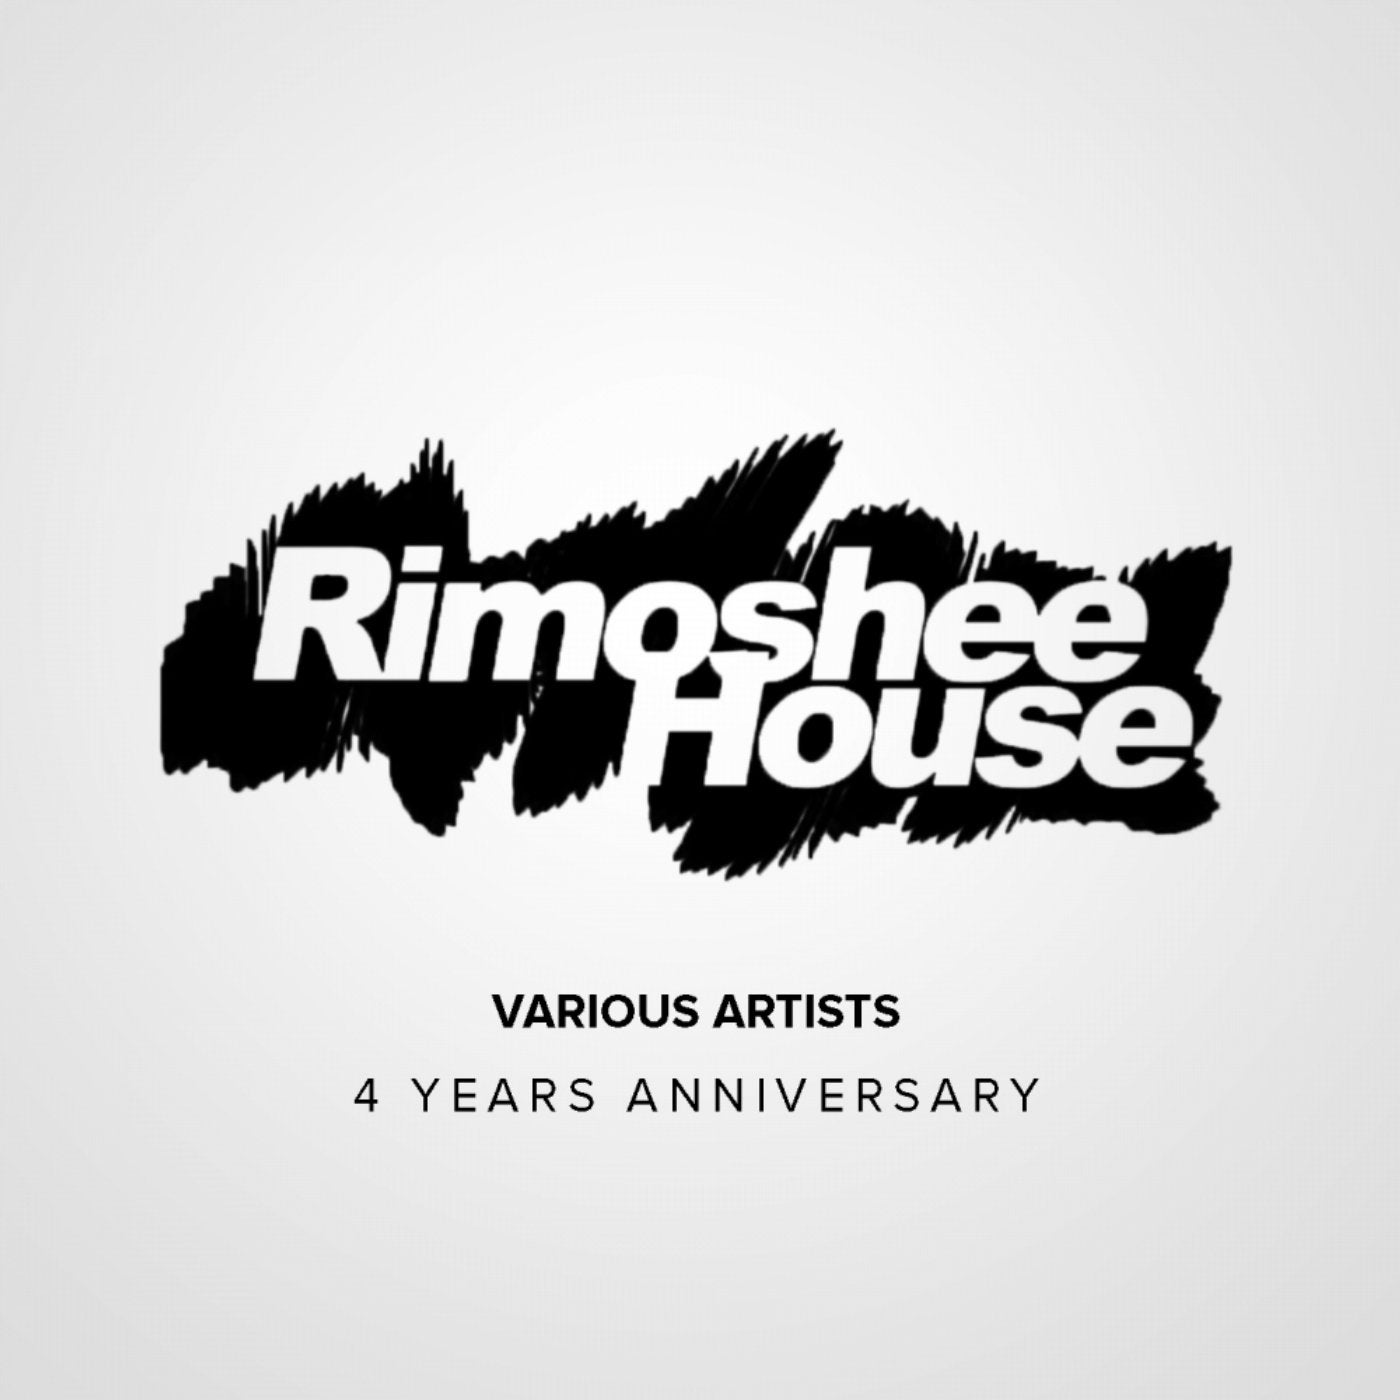 Rimoshee House: 4 Years Anniversary